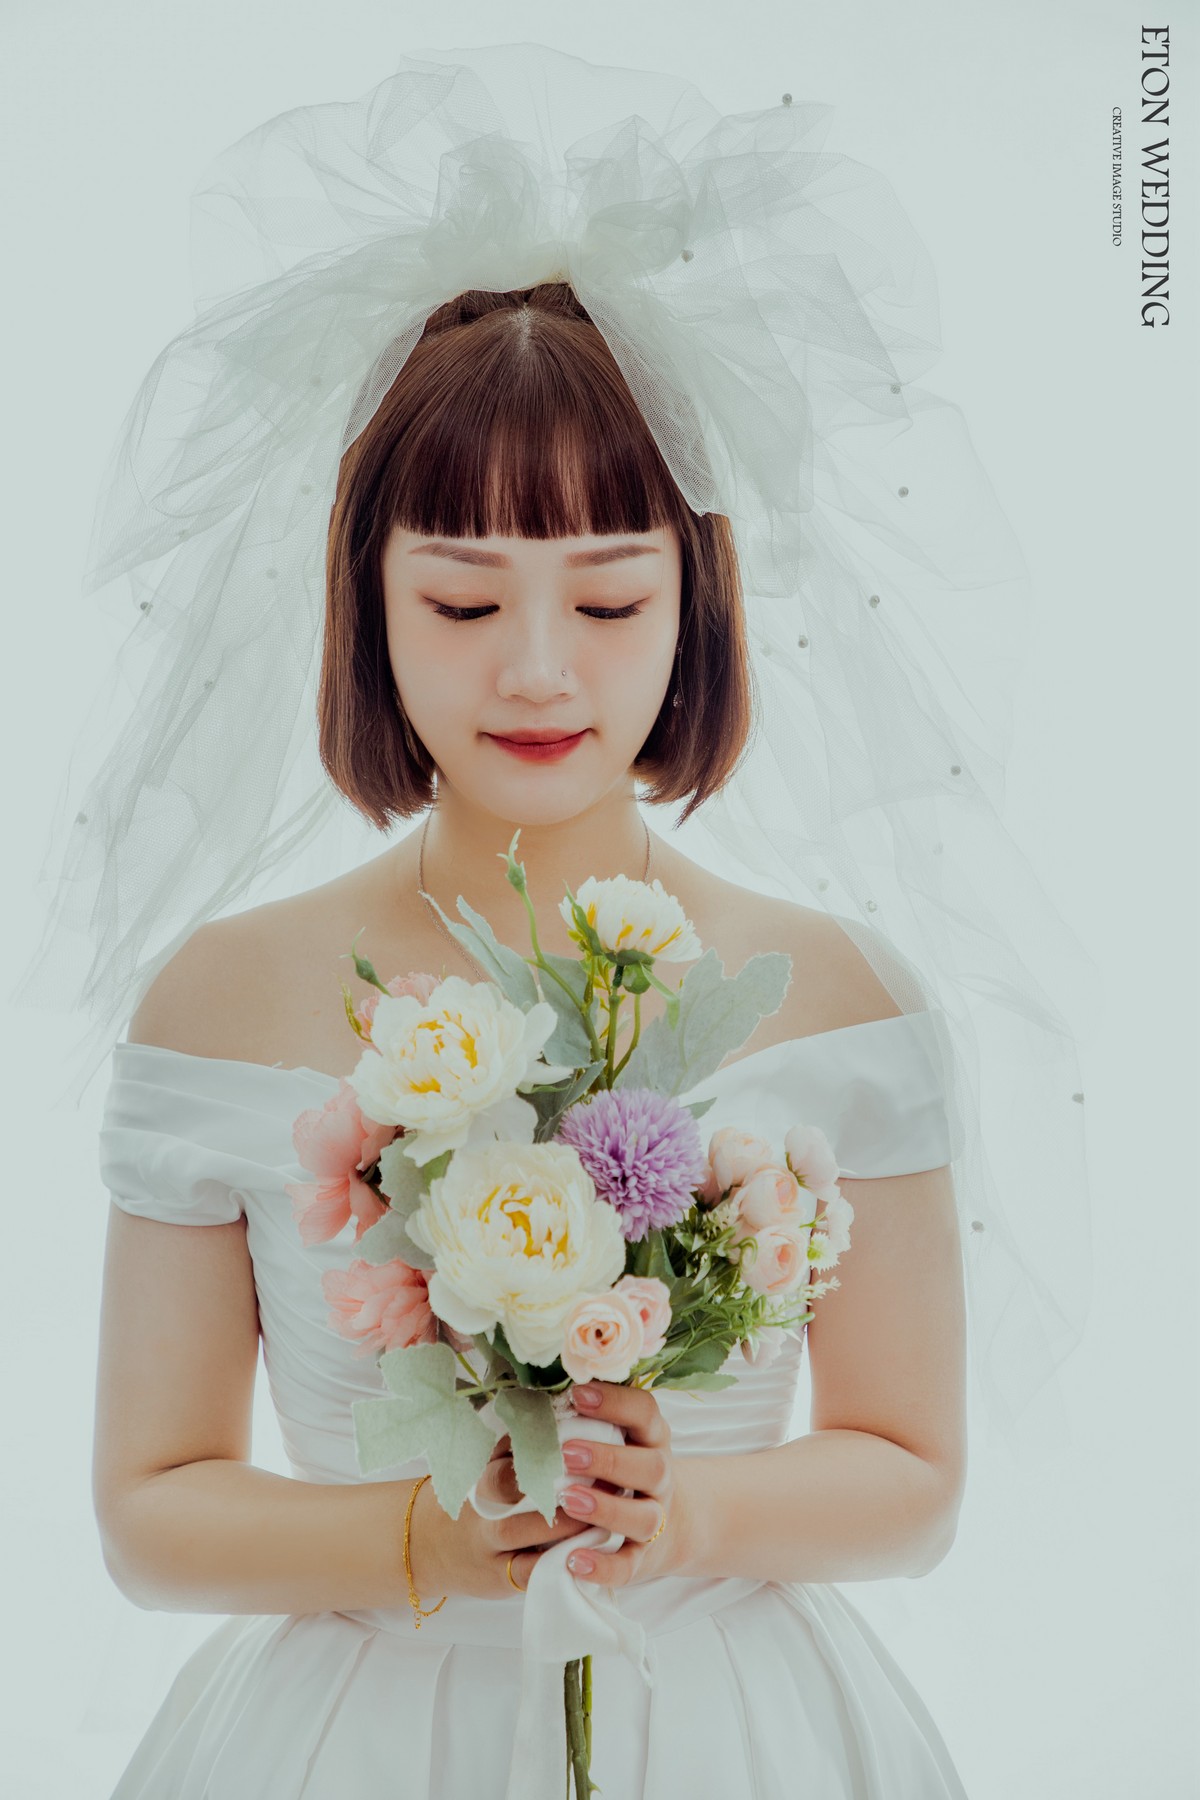 一個短髮可愛新娘手上拿著一束捧花的可愛婚紗照